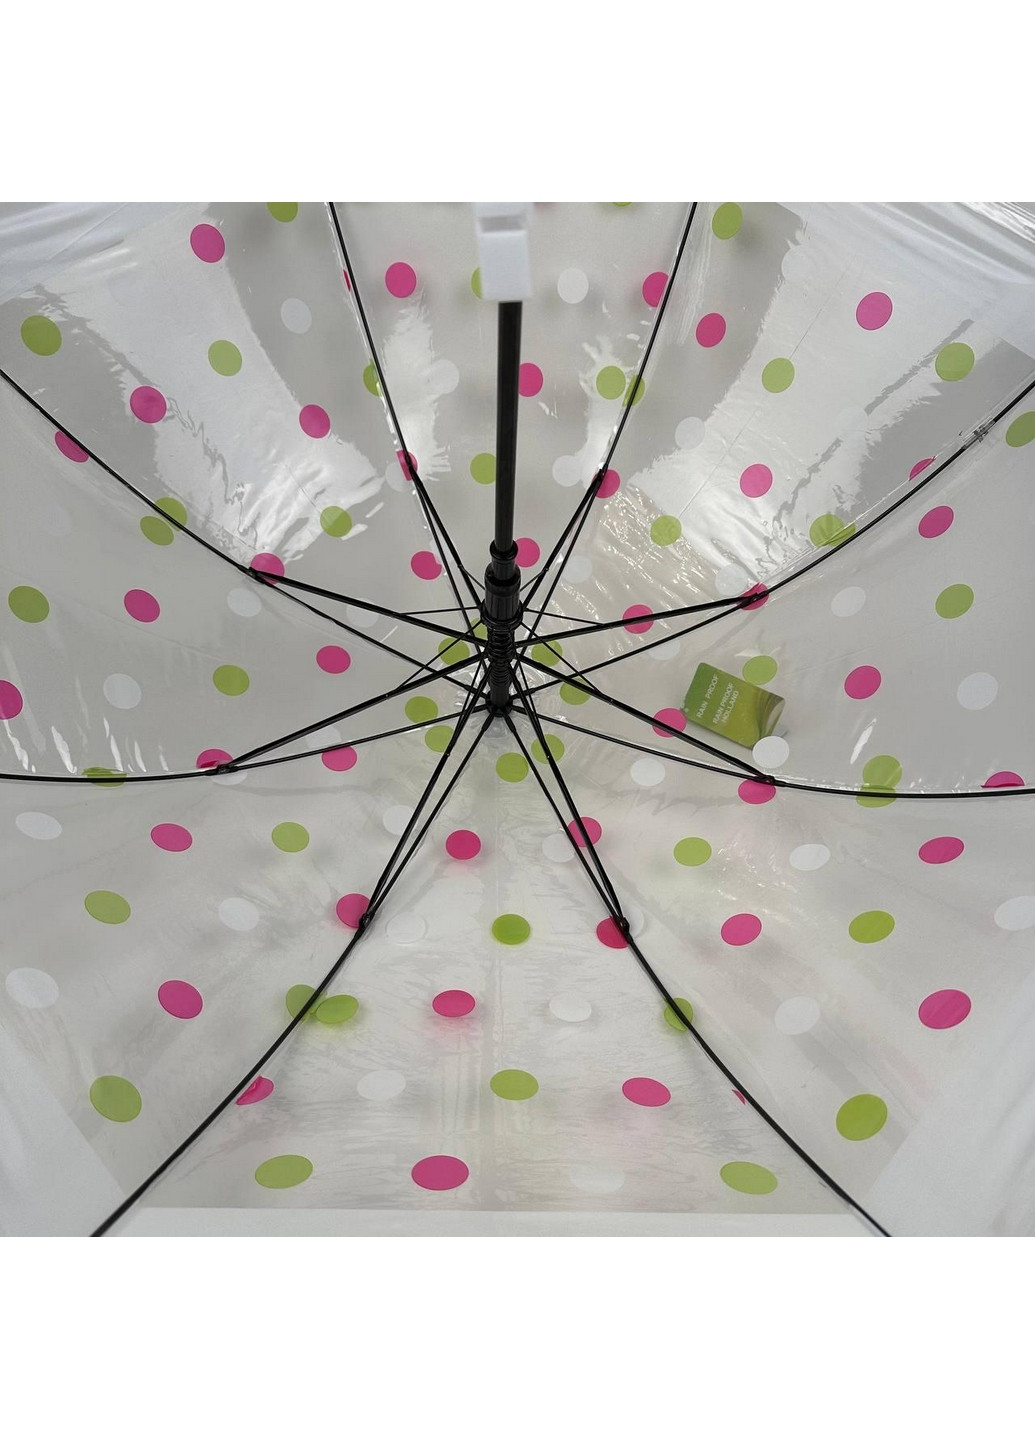 Прозрачный детский зонт трость полуавтомат Rain (277691359)